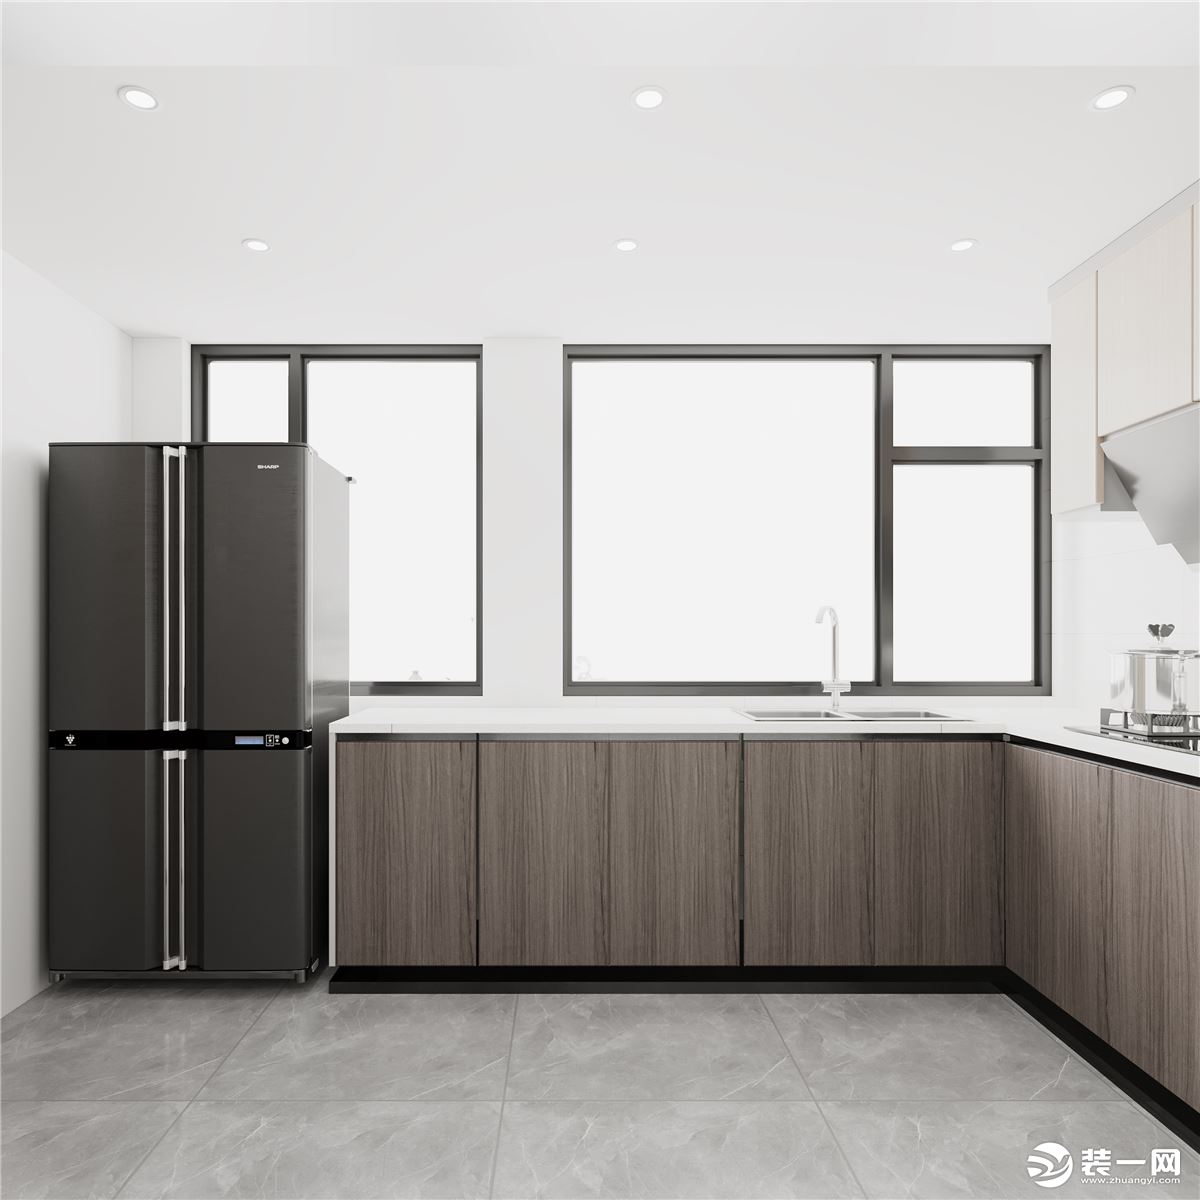 廚房L型設計將煙機灶具放置東側，更好的增加儲物空間，冰箱放置在左側方便物品的拿放使用。